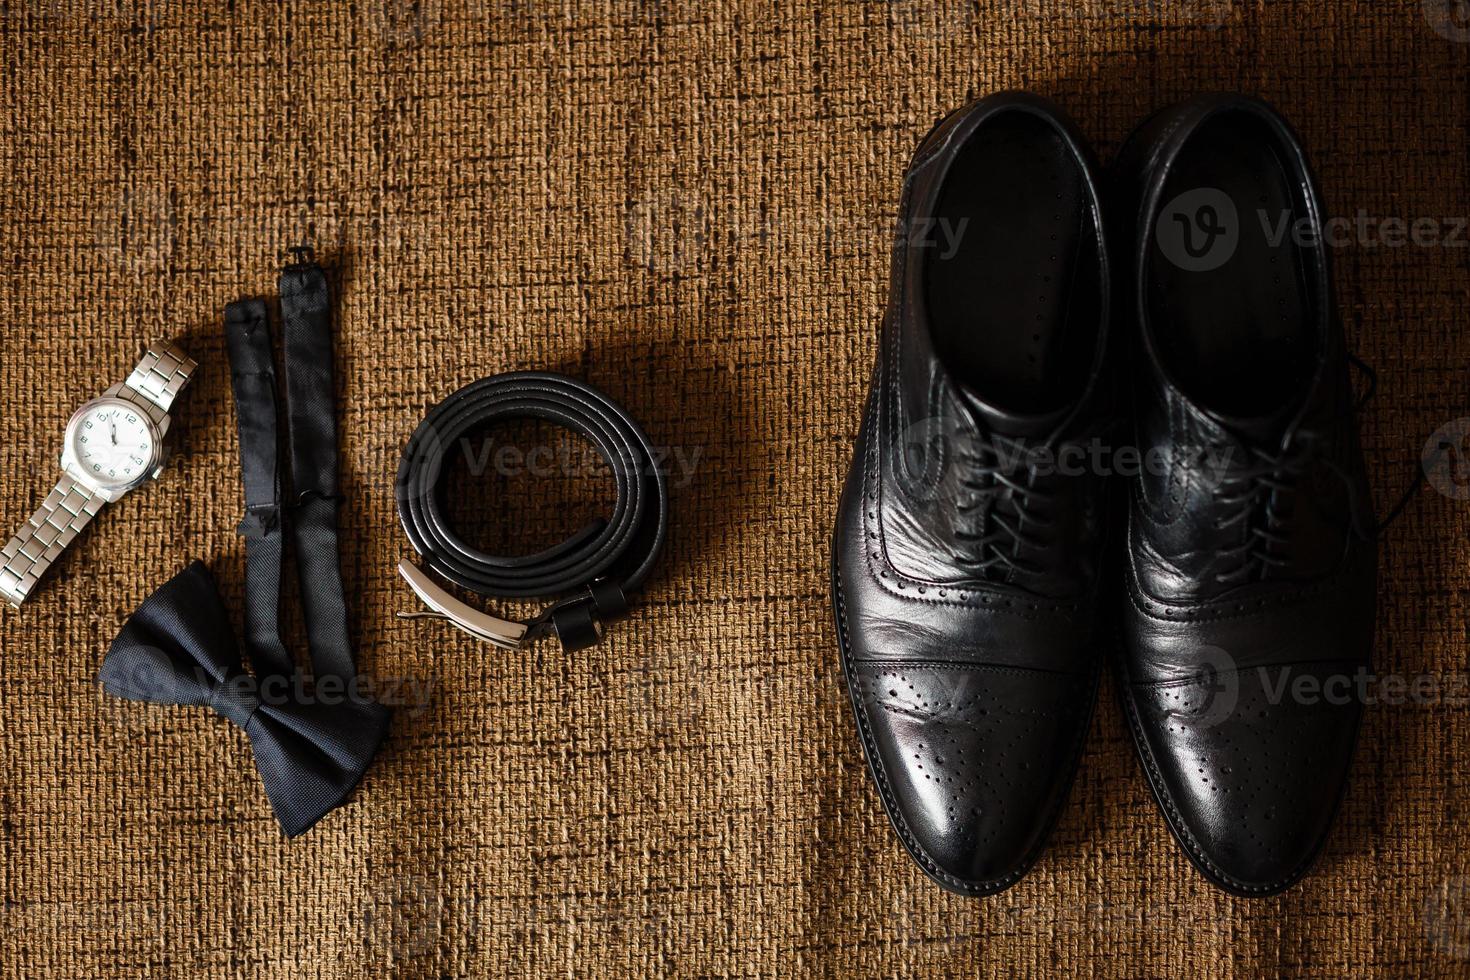 Schwarze Schuhe, schwarzer Gürtel, schwarze Uhr, schwarzer Schmetterling, Manschettenknöpfe und Parfüm auf braunem Hintergrund mit Sackleinen foto